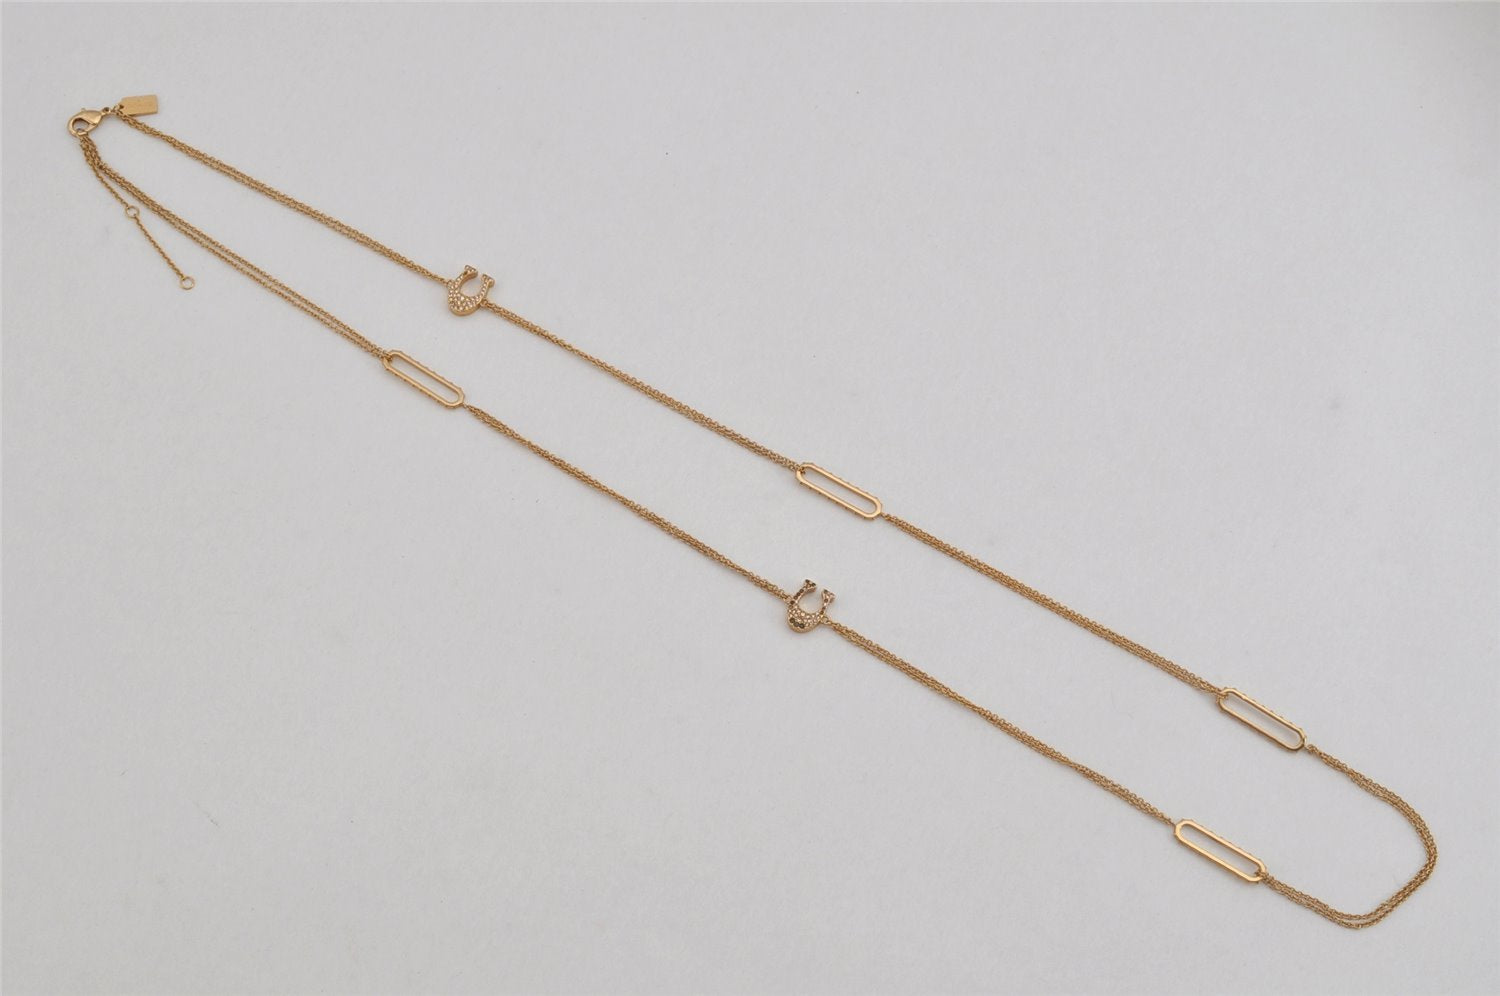 Authentic COACH Vintage Long Chain Pendant Necklace Gold 8447J